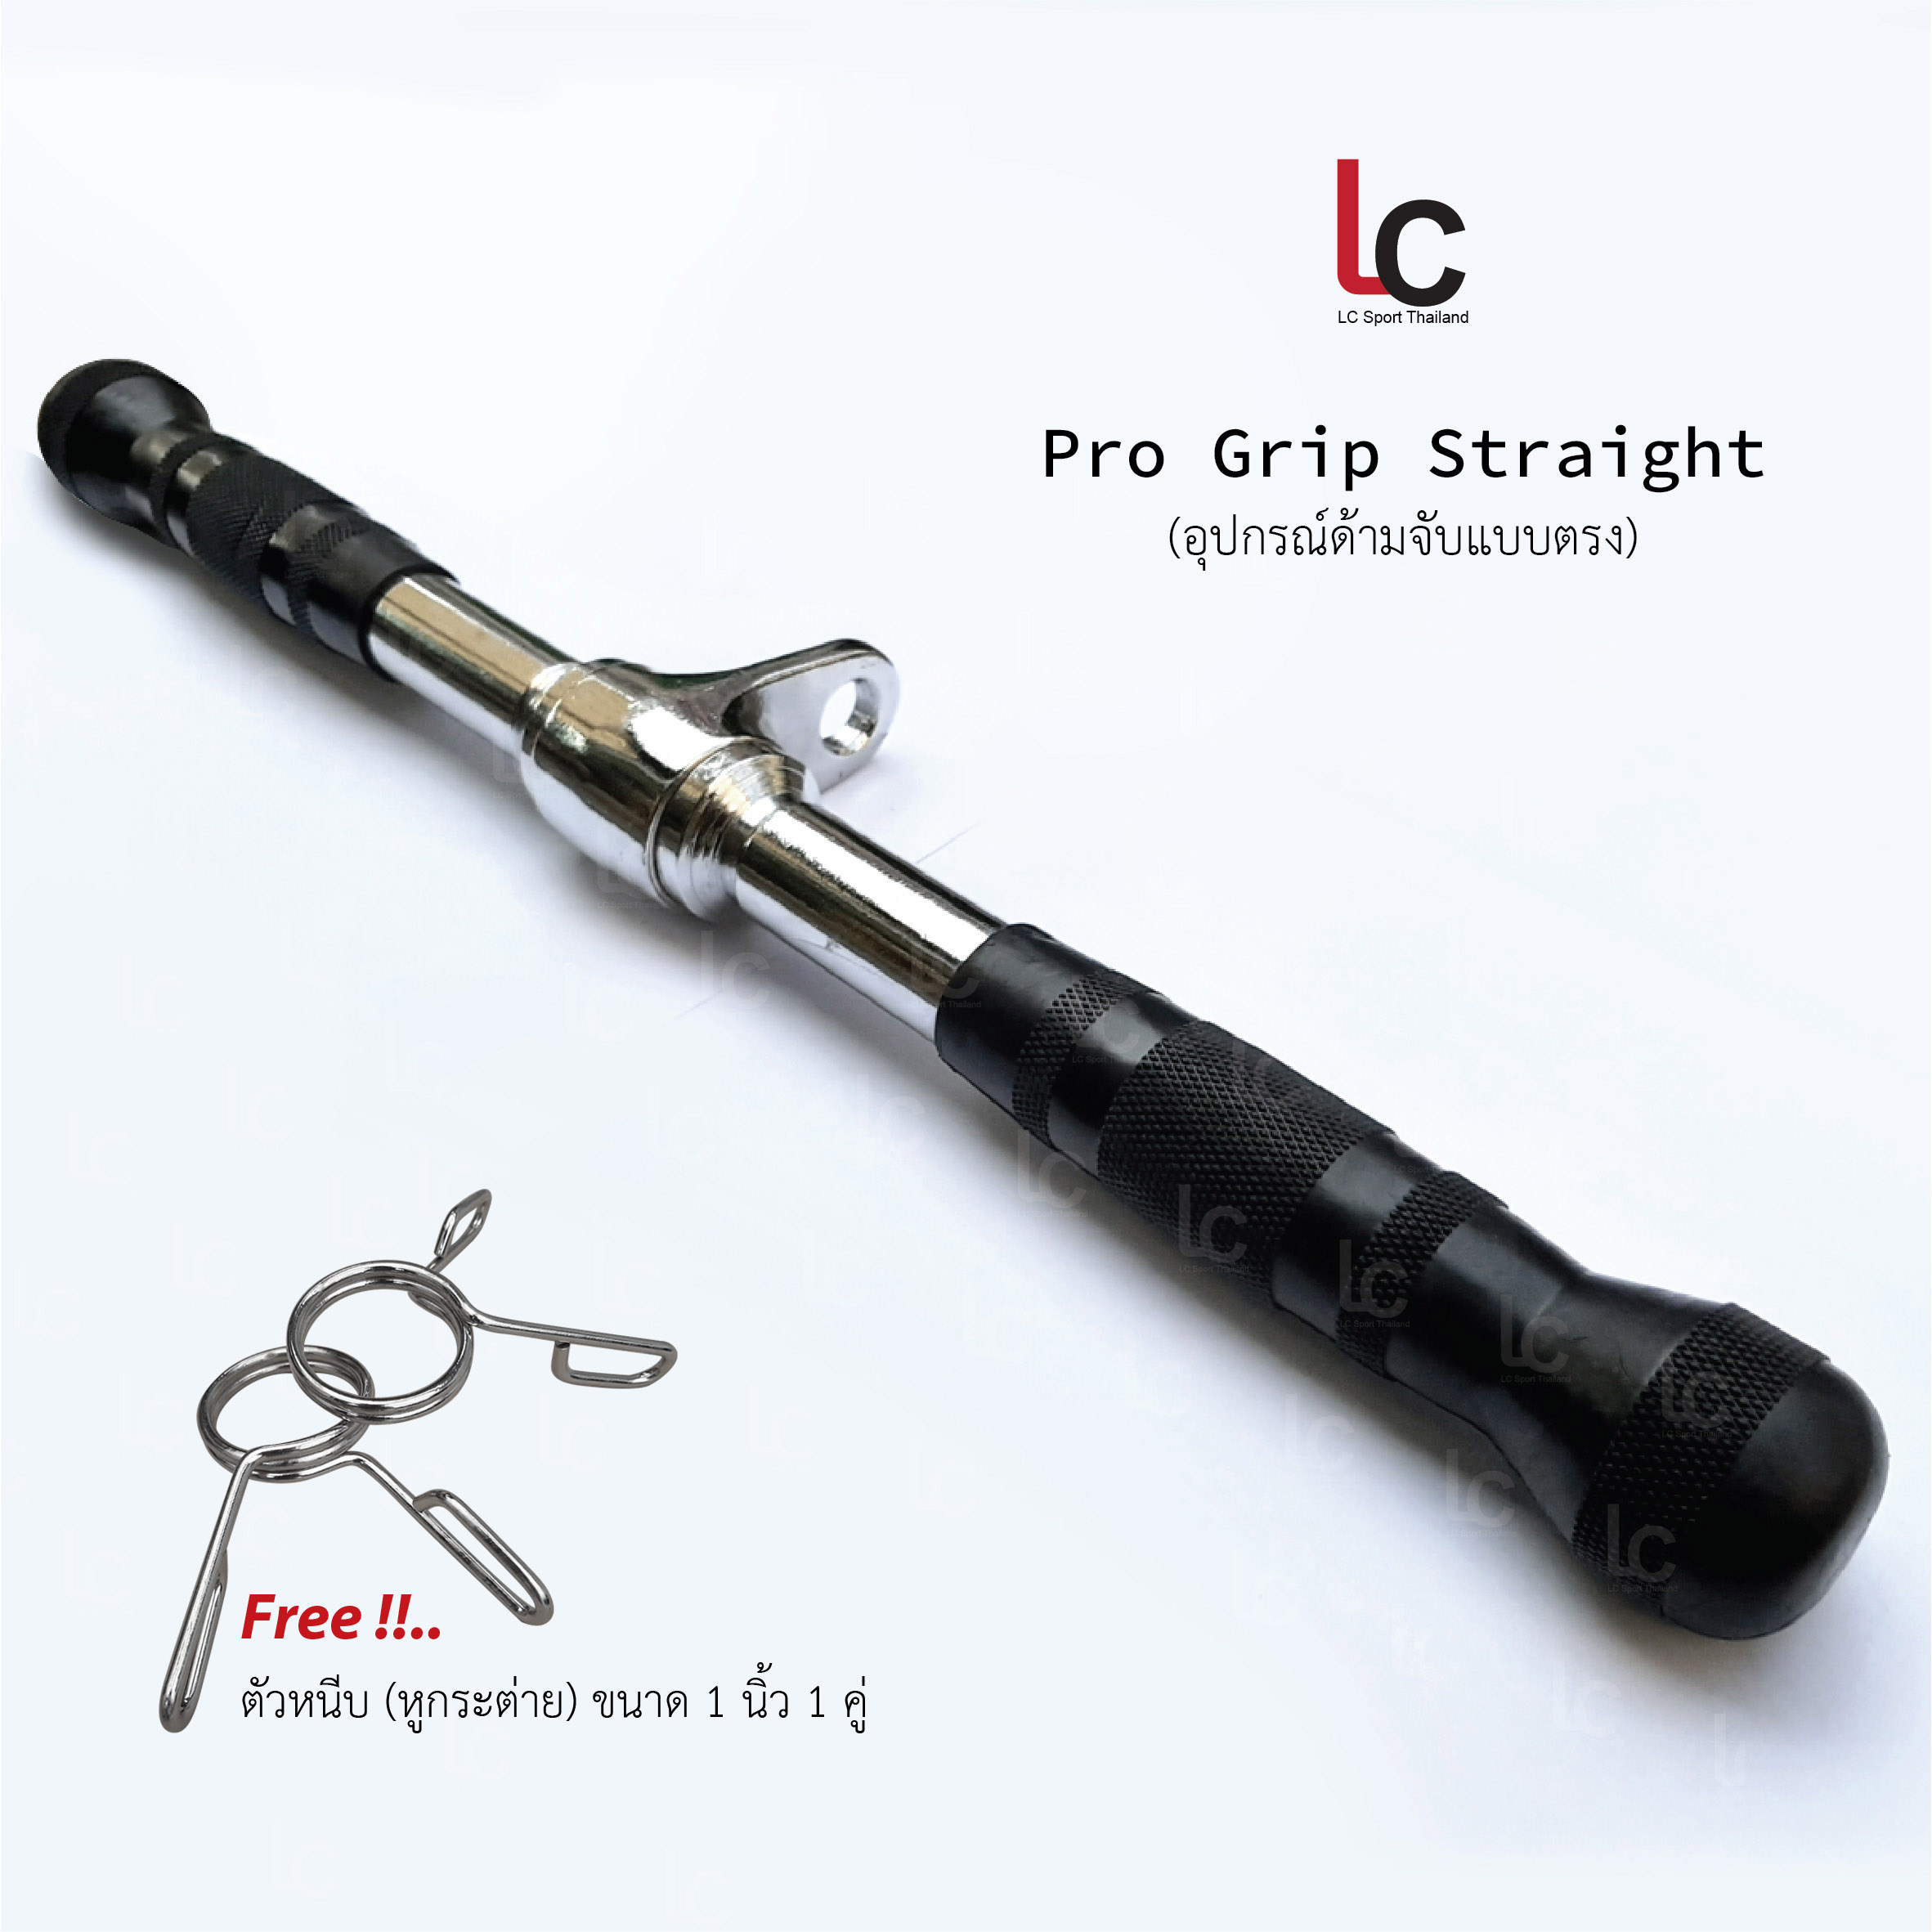 Pro Grip Straight  อุปกรณ์สำหรับดึงแบบตรง